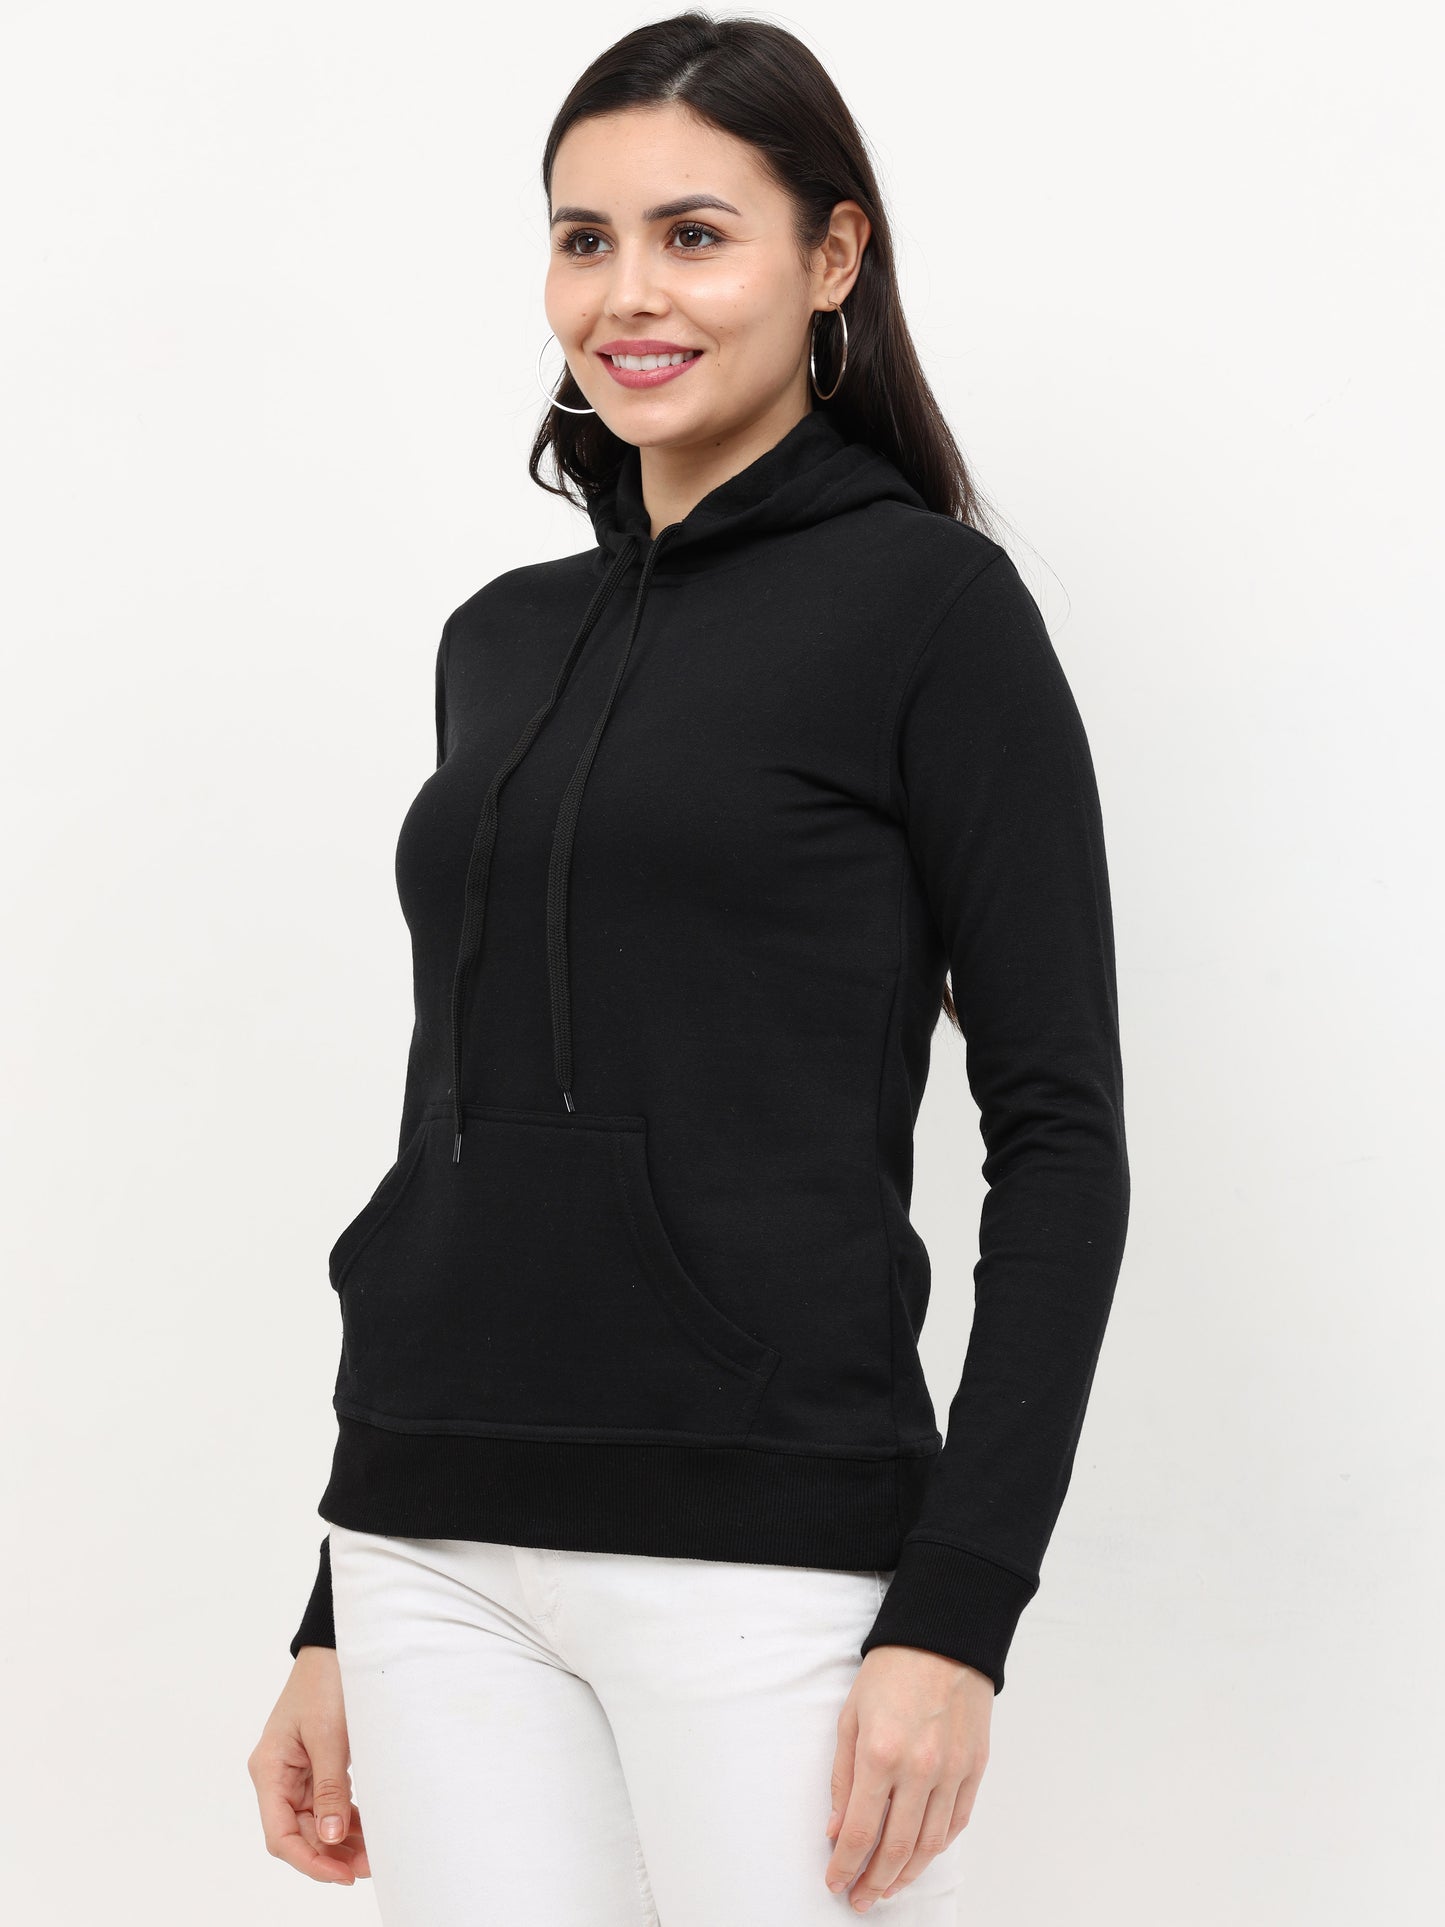 Women's Cotton Plain Black Color Sweatshirt Hoodies